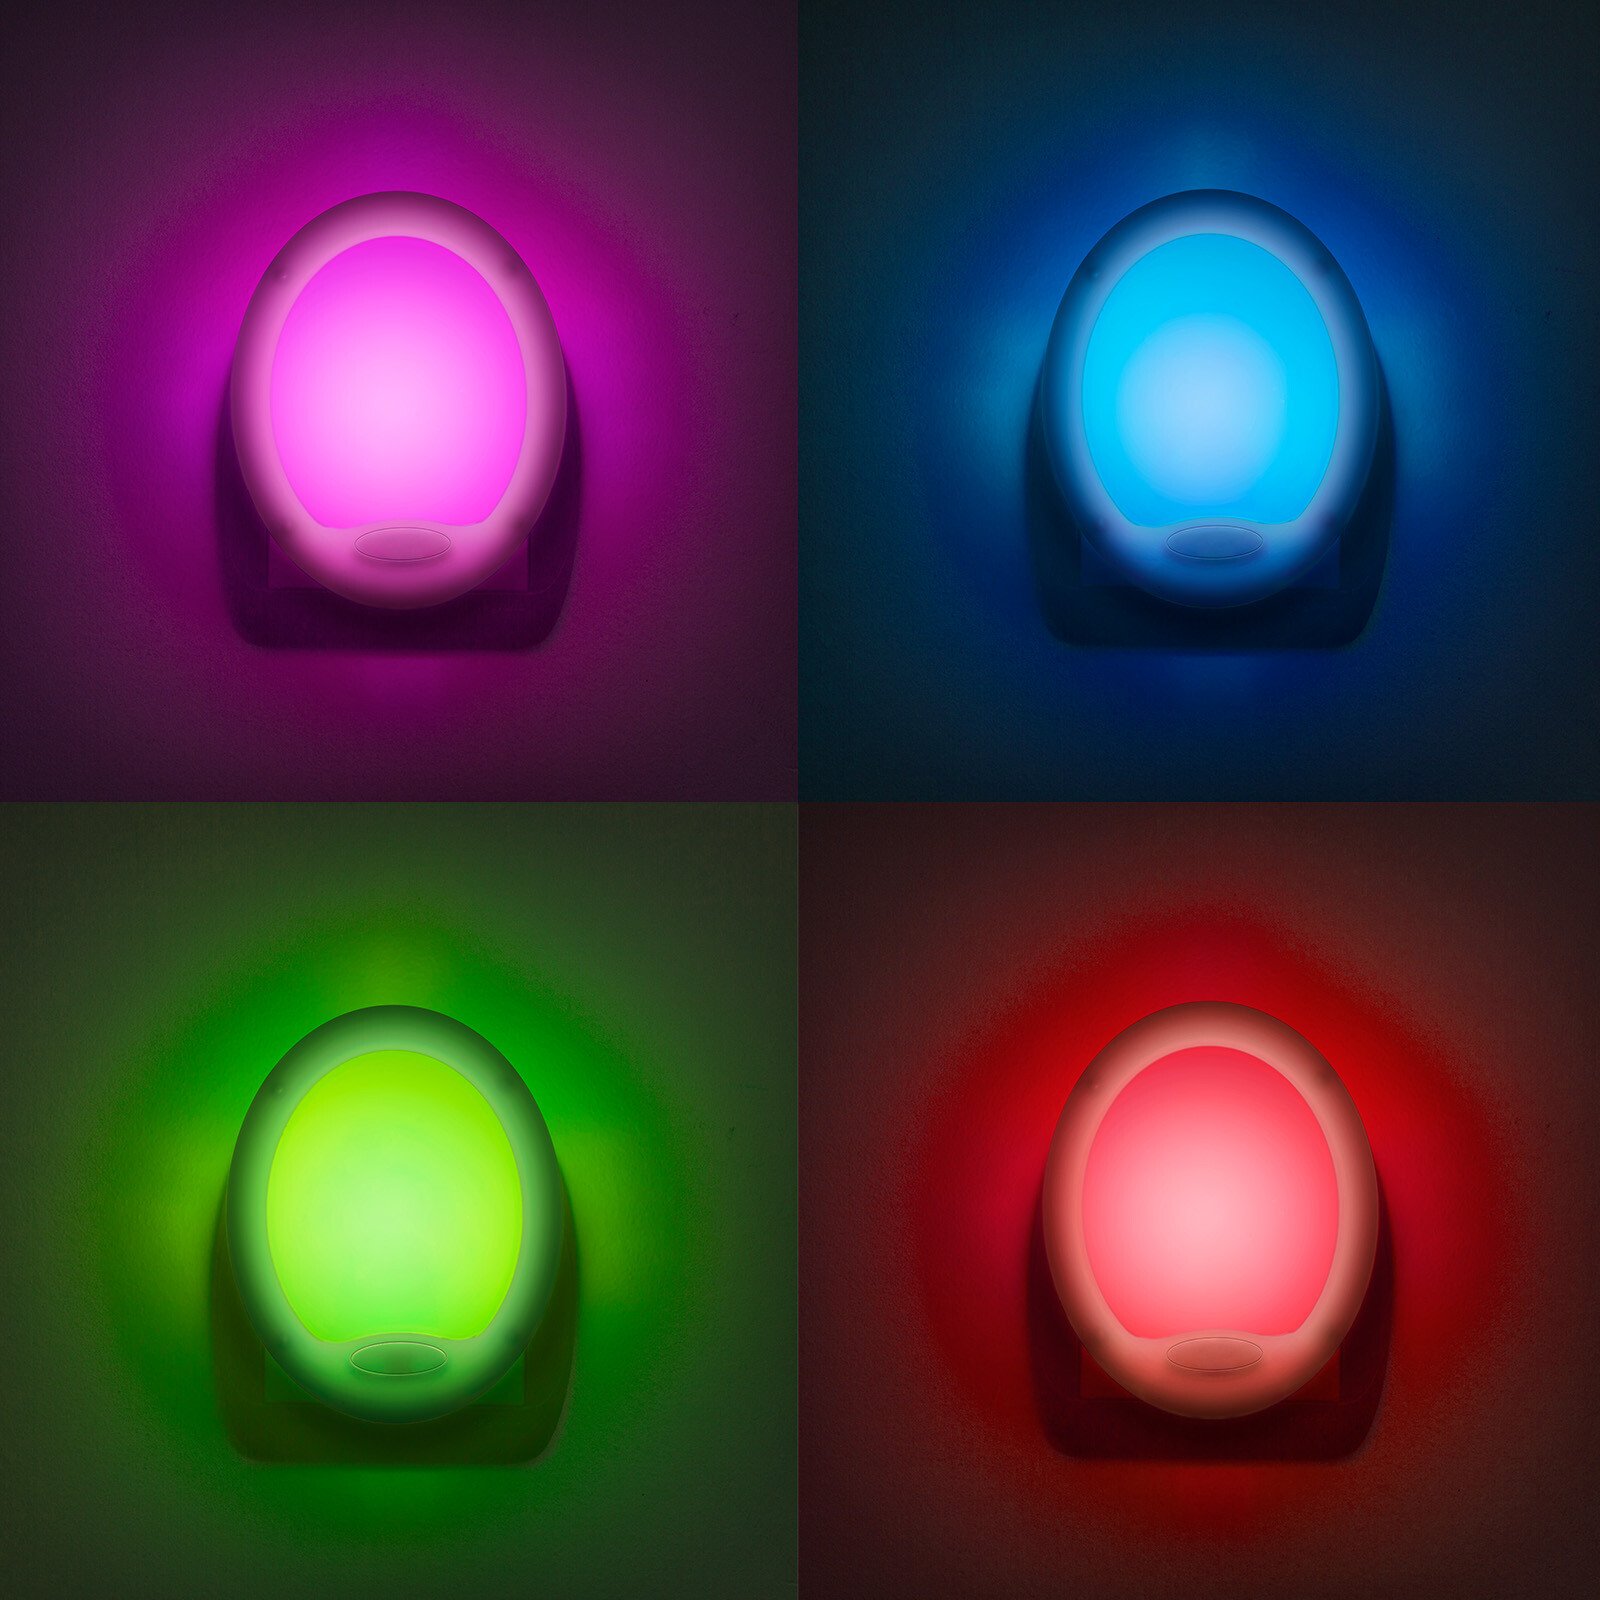 LED éjszakai fény, színváltós - Premium "Smooth" - 7 LED thumb